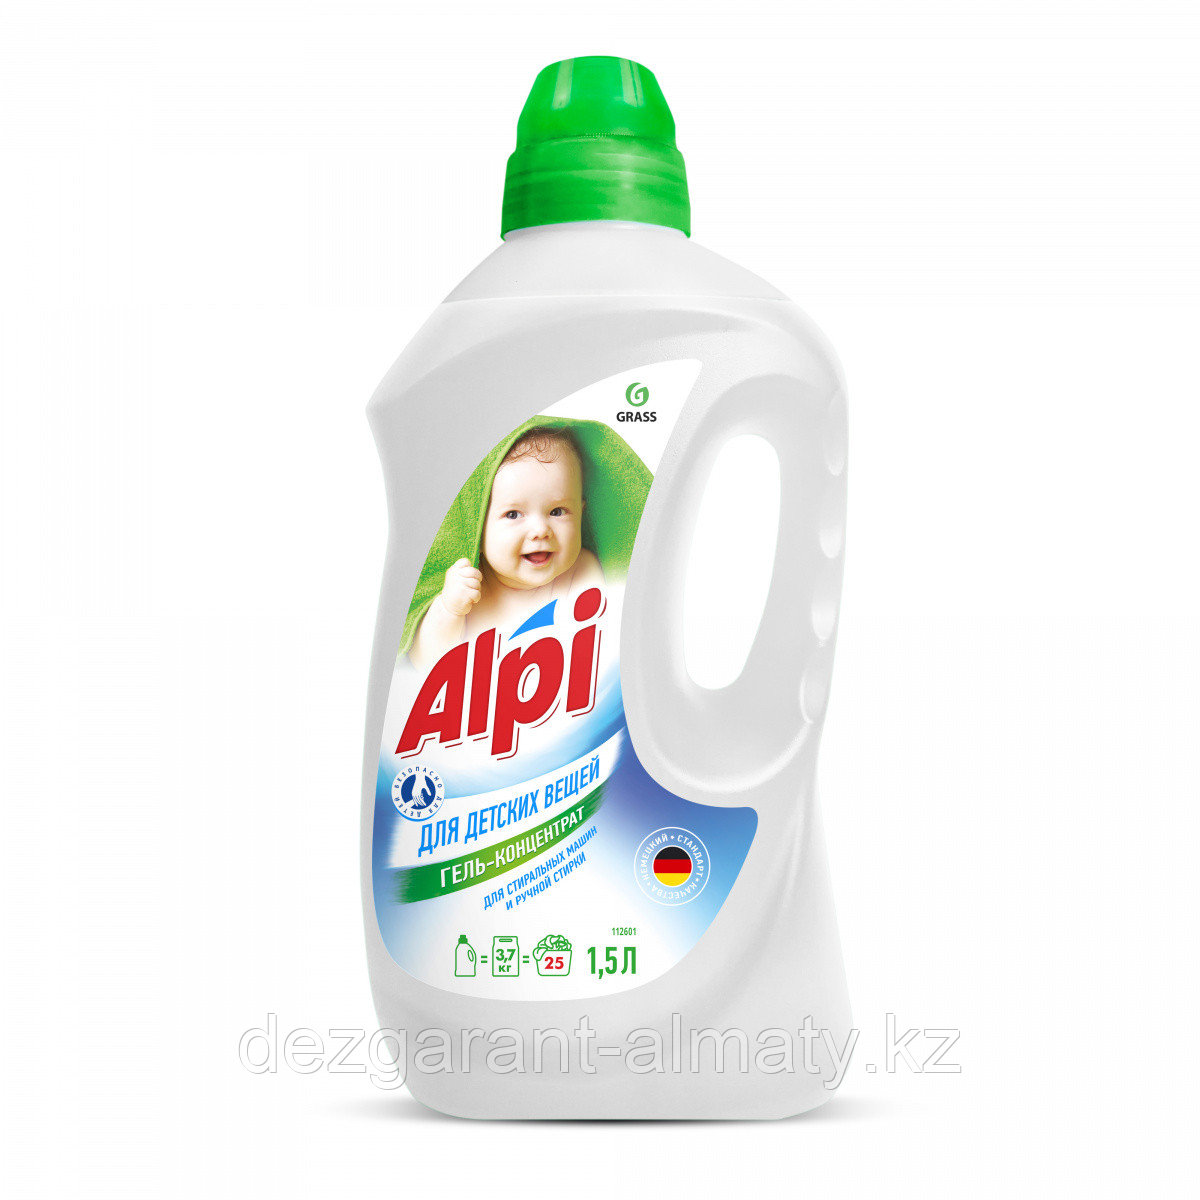 ALPI гель-концентрат для стирки детских вещей 1,5 л